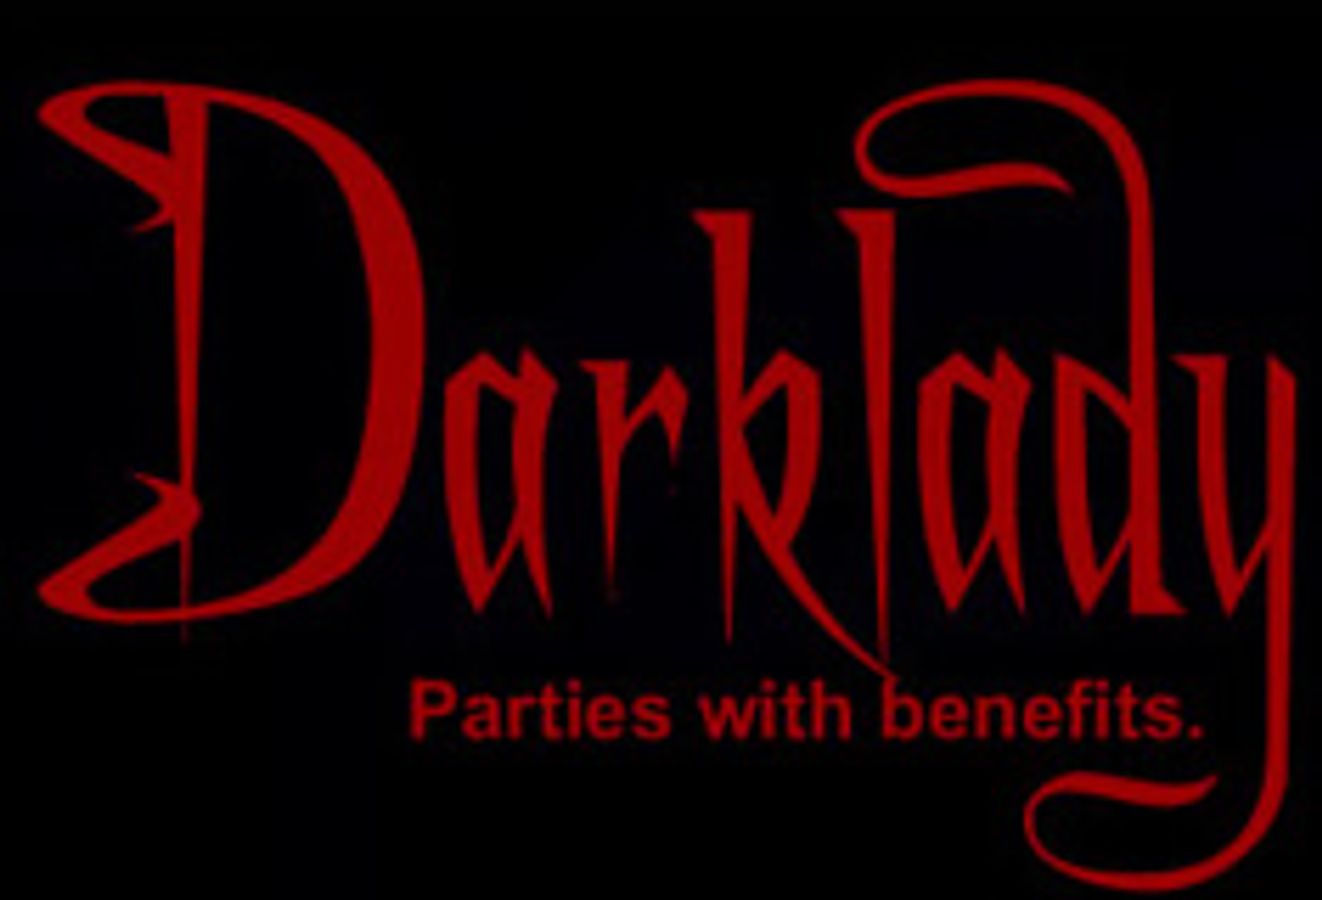 Darklady